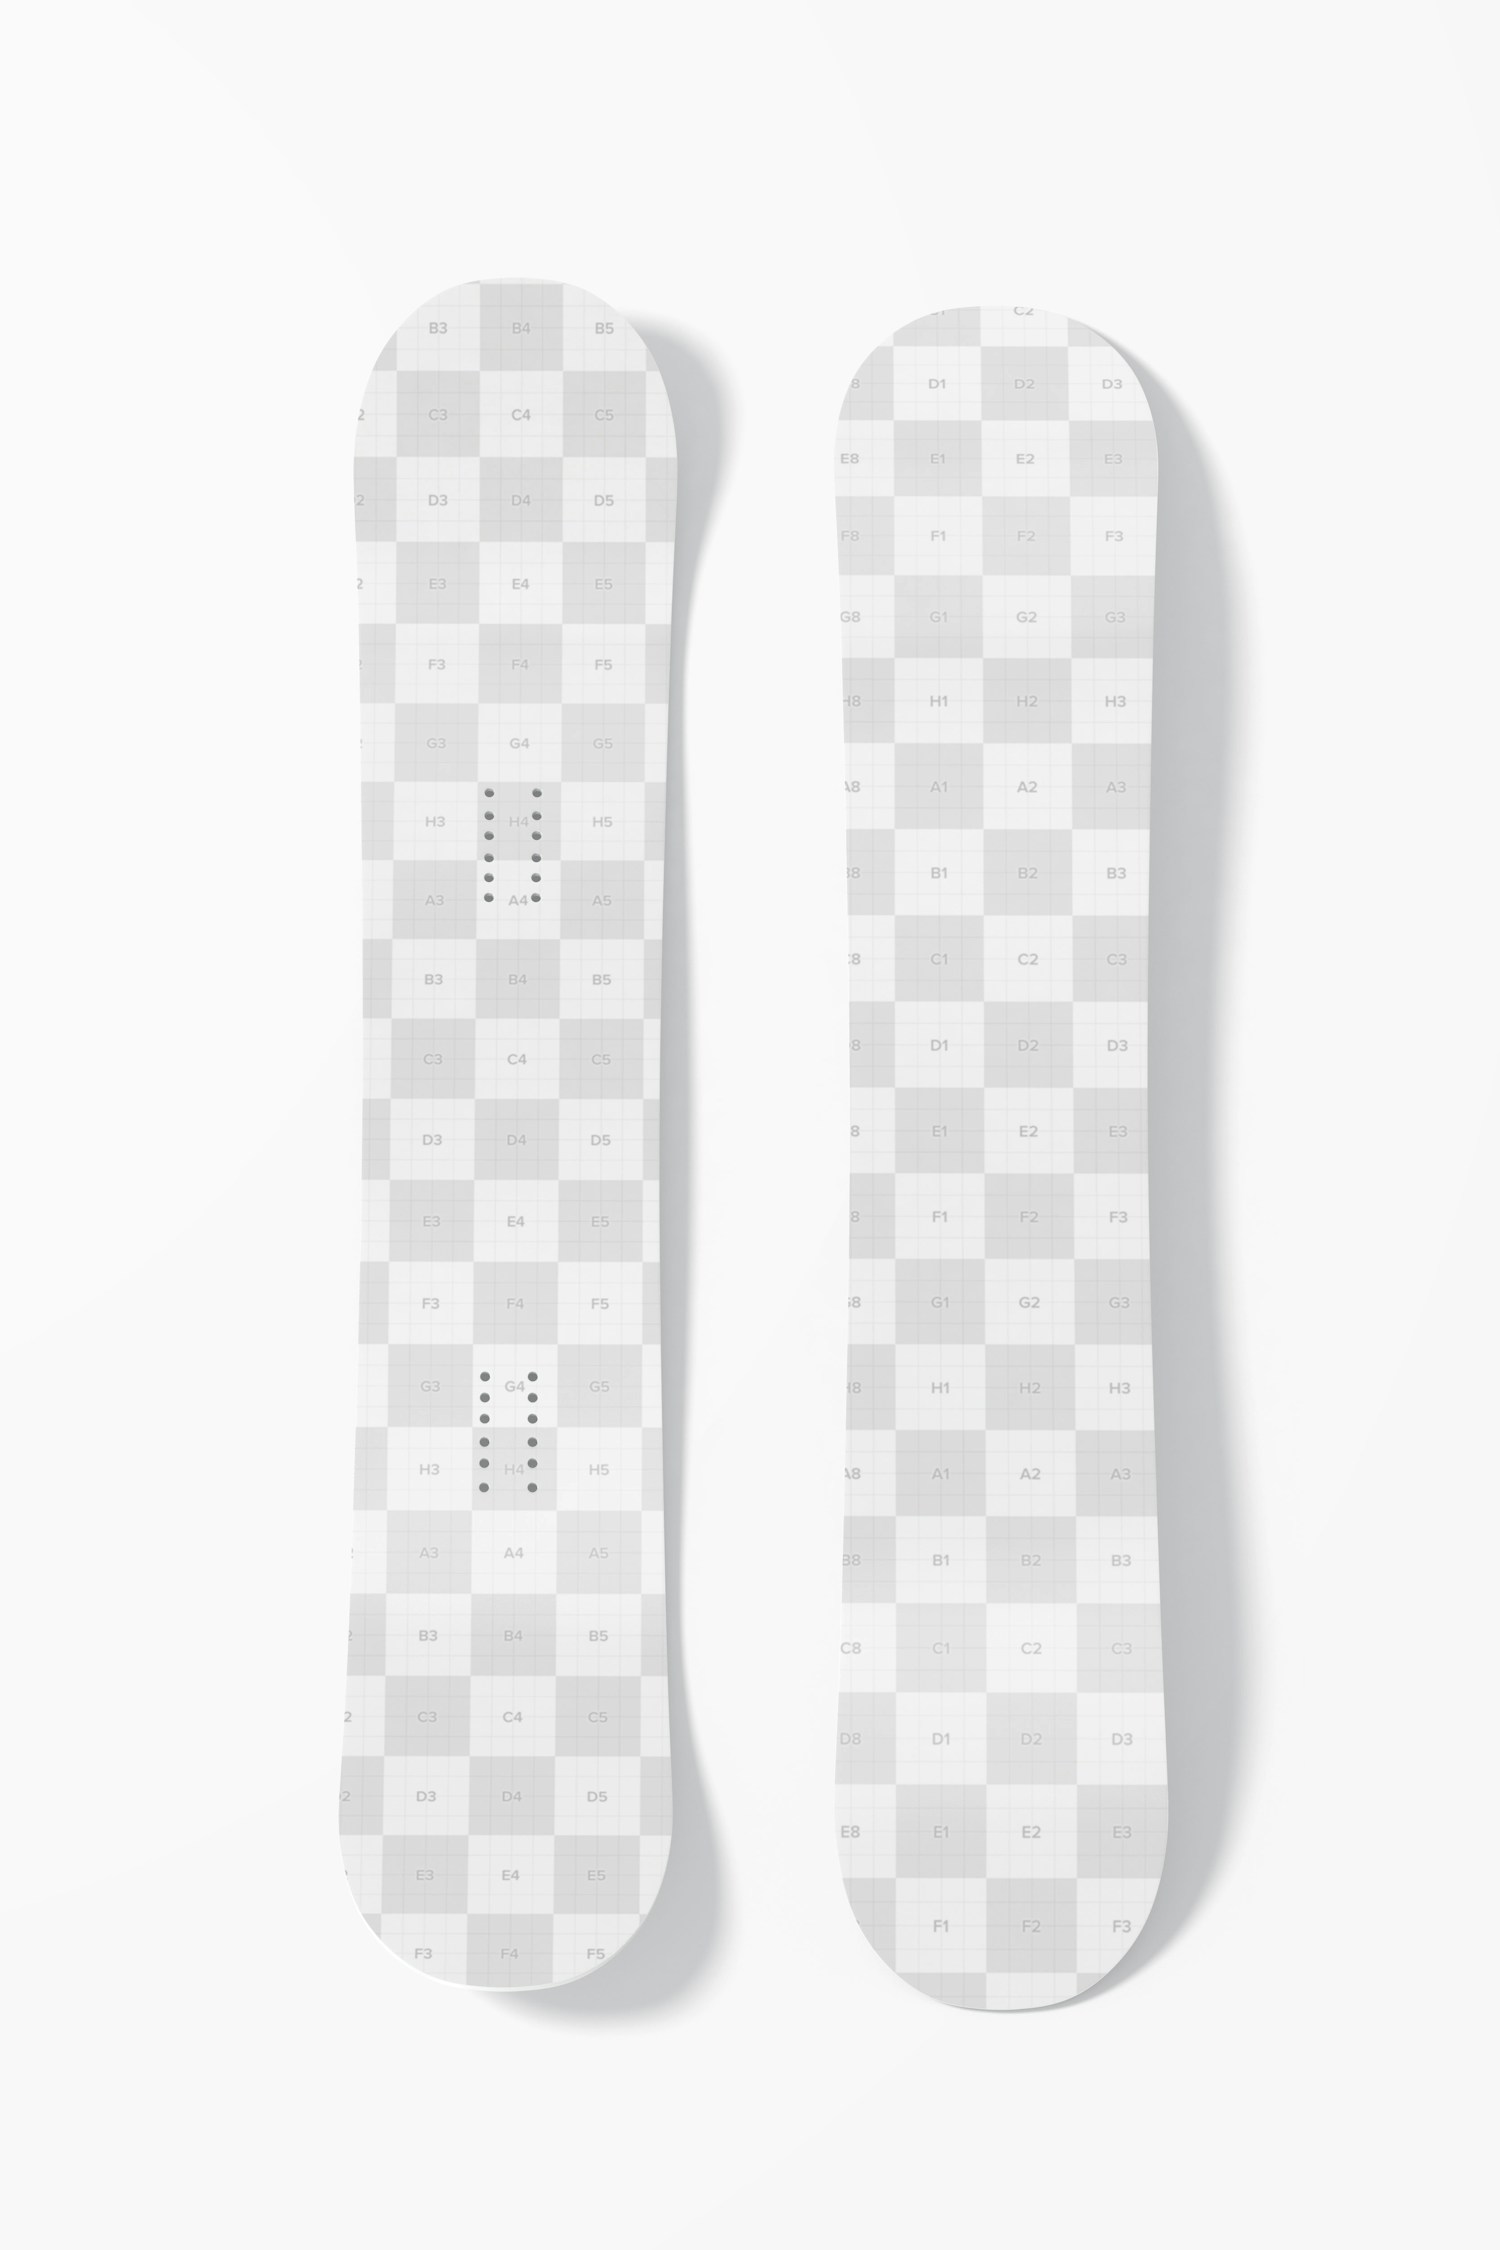 Maqueta de Tabla de Snowboard